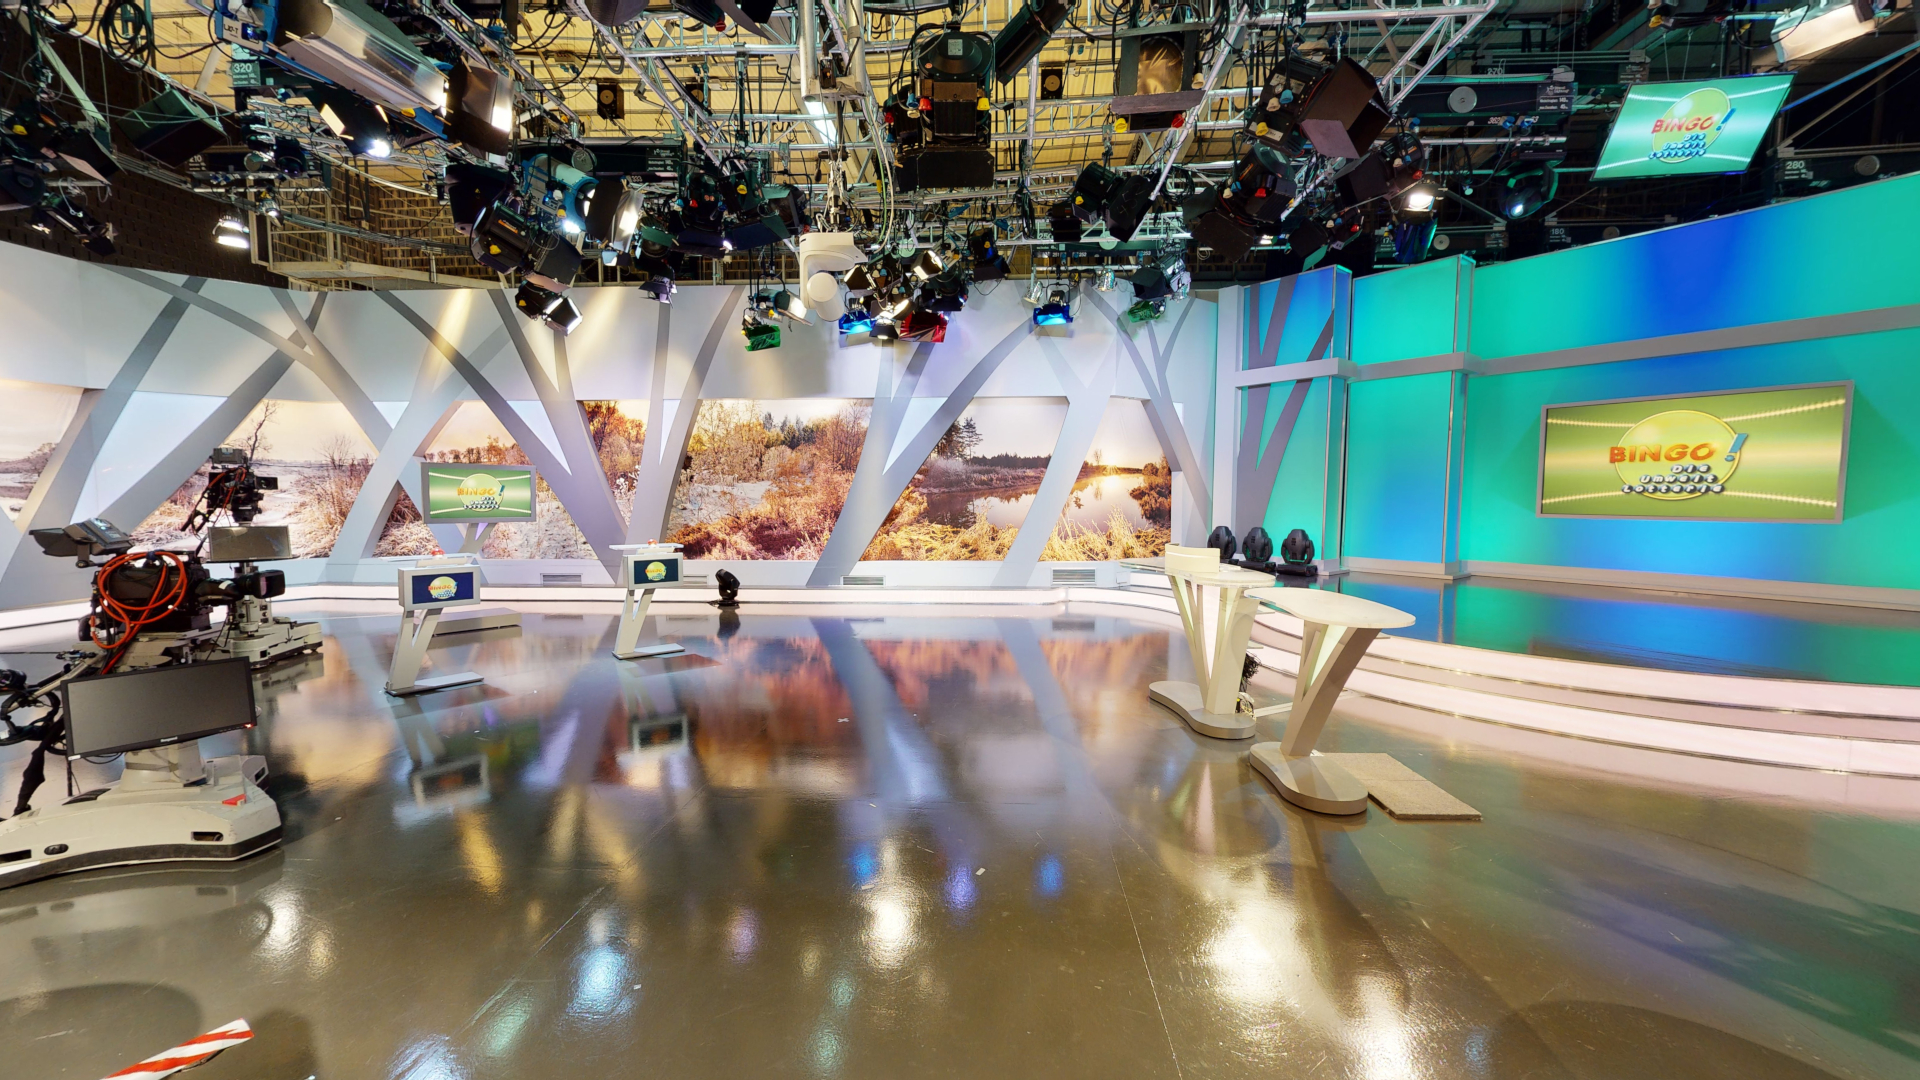 Ein blick in unser Studio Nummer 3, hier werden zahlreiche TV-Formate für z.B. den NDR gedreht